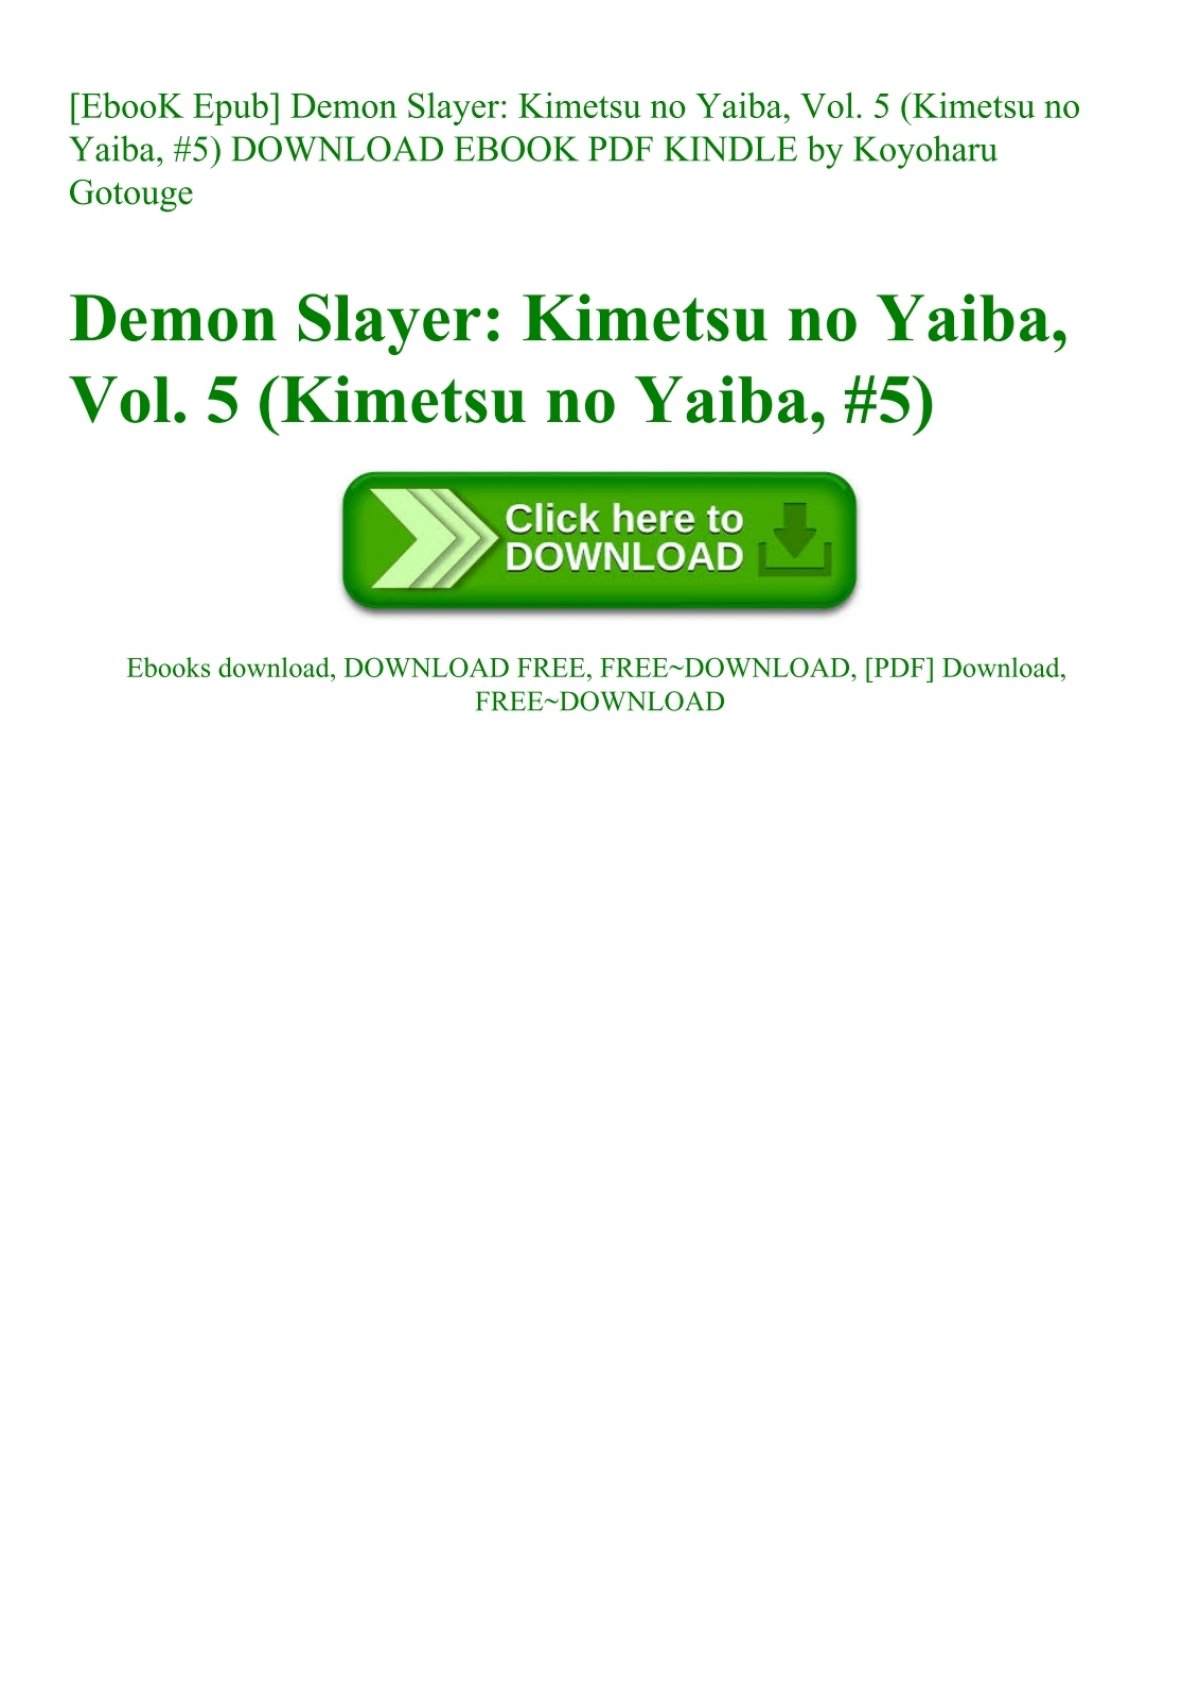 Ebook Epub Demon Slayer Kimetsu No Yaiba Vol 5 Kimetsu No Yaiba 5 Download Ebook Pdf Kindle By Koyoharu Gotouge